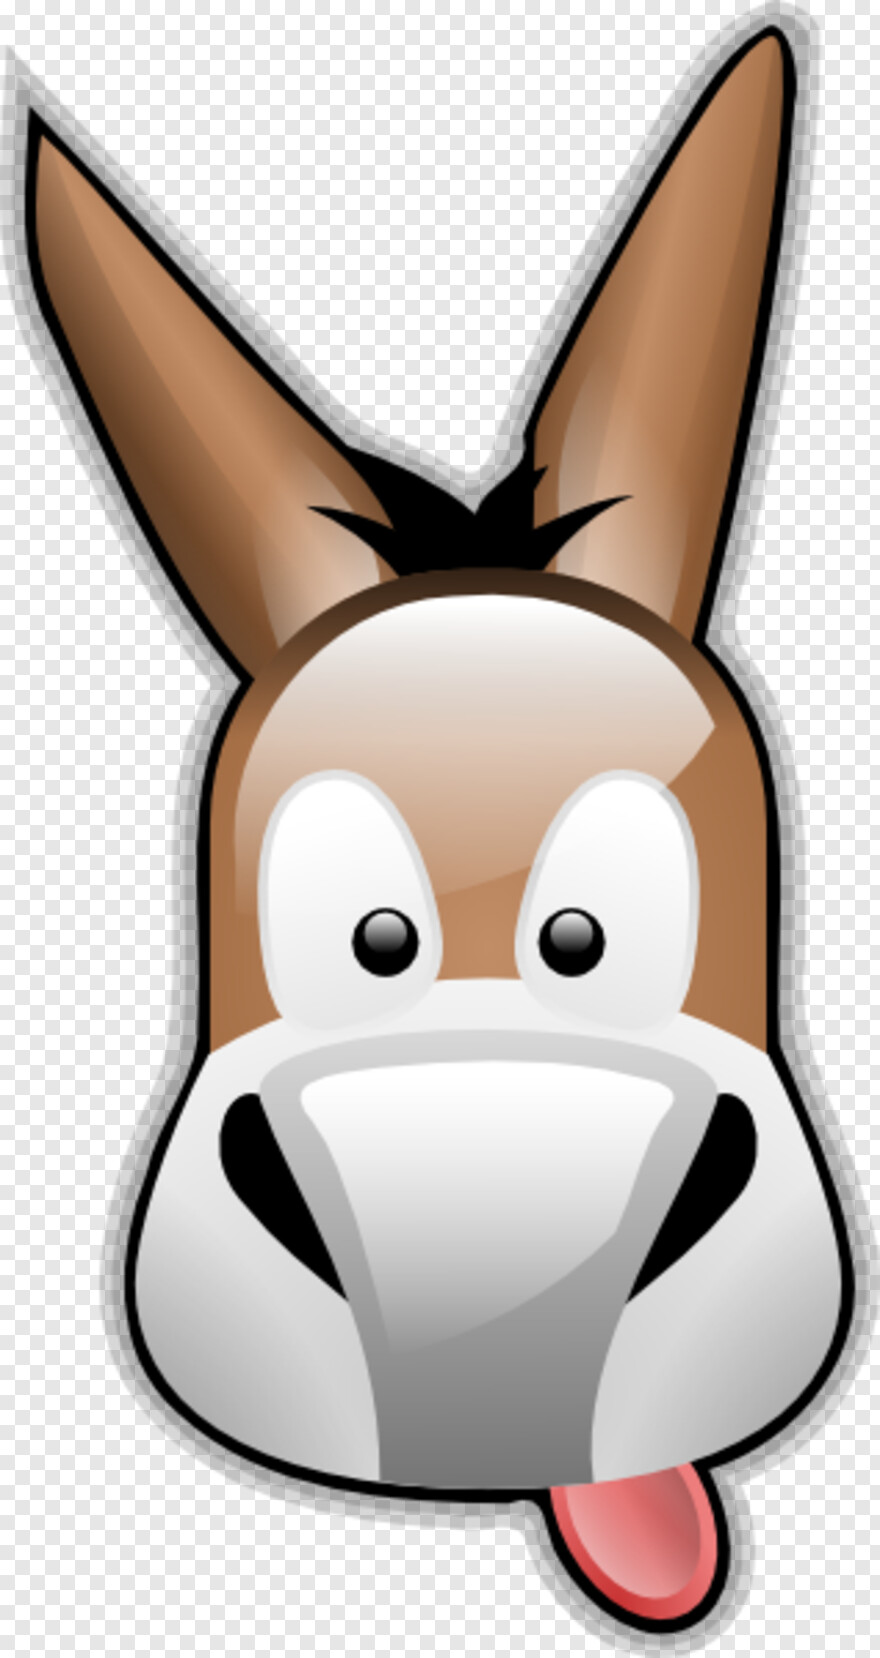 donkey-shrek # 891901